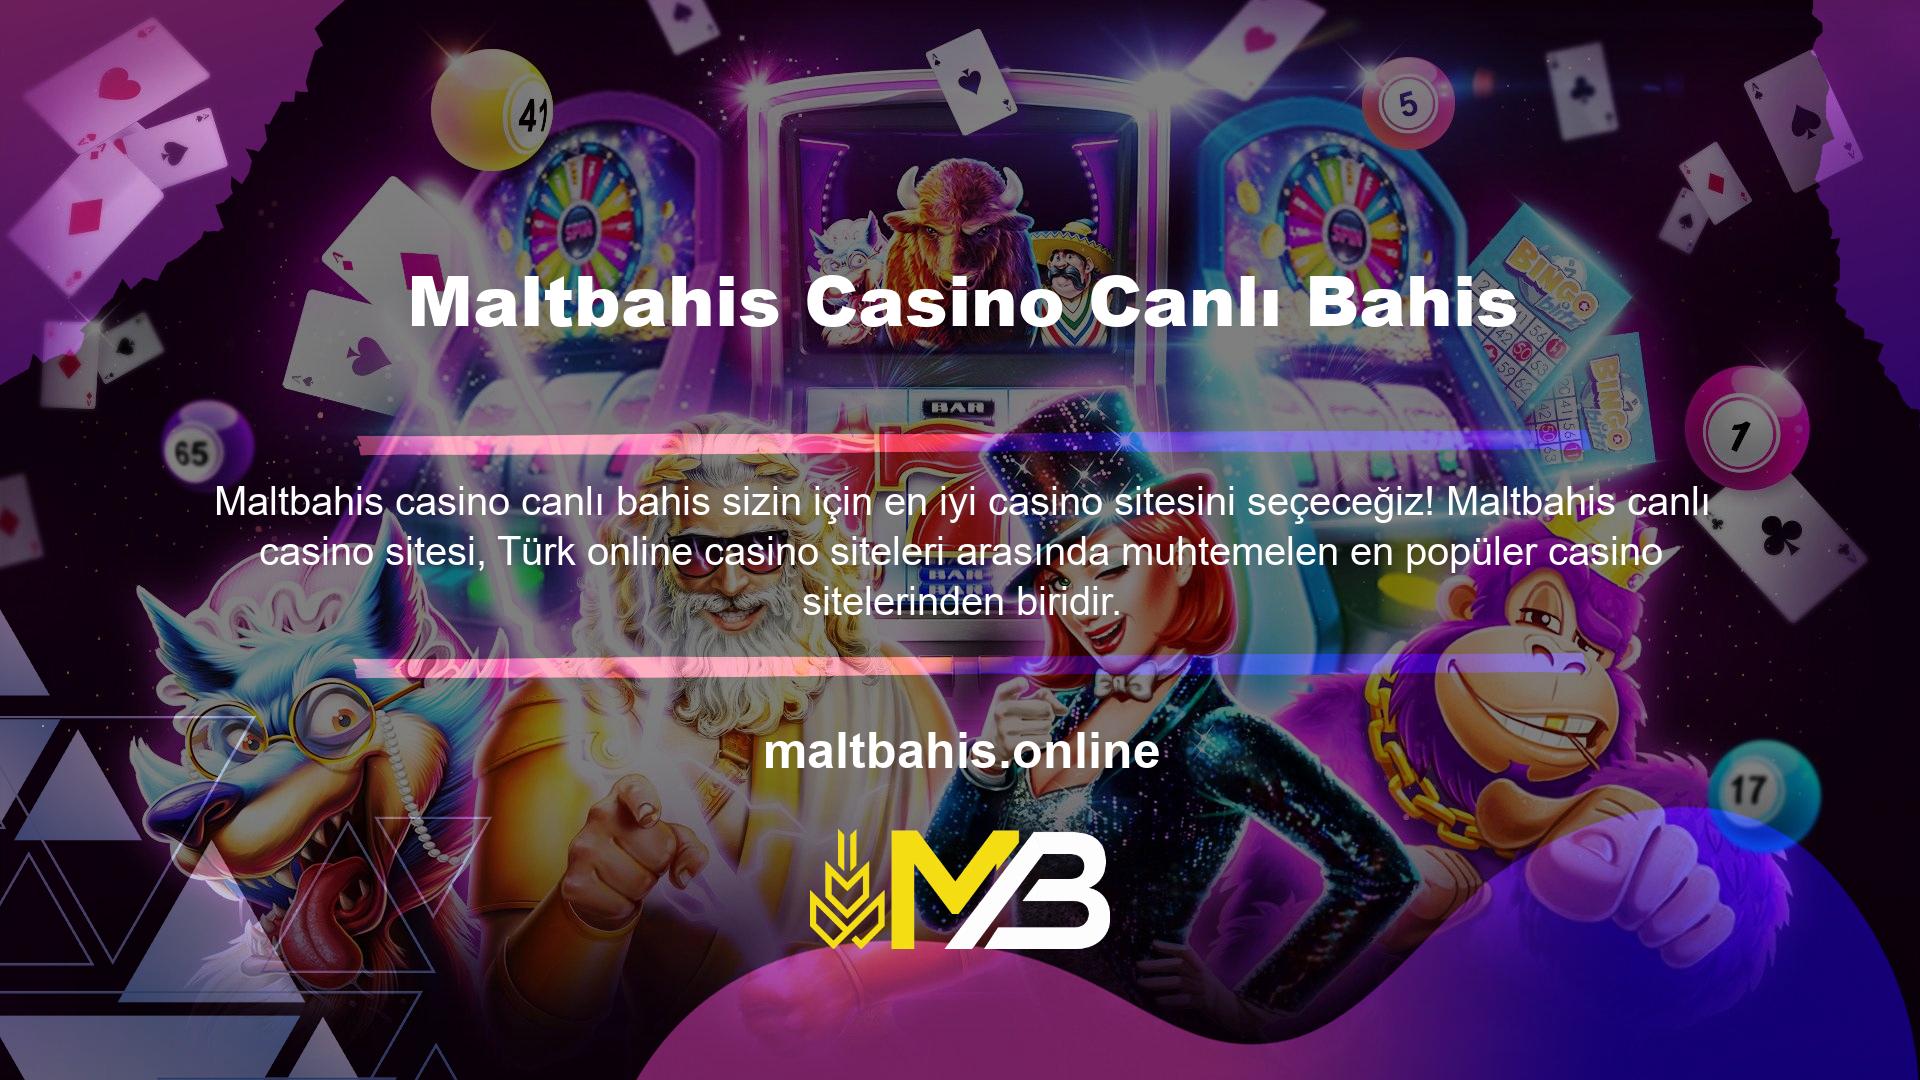 Türkiye'nin ilk ve en büyük casino sitelerinden biri olan Maltbahis, canlı casino sektöründe büyük heyecan yaratmış ancak sunduğu sayısız bonus ve promosyonlarla müşterilerini memnun edememiştir